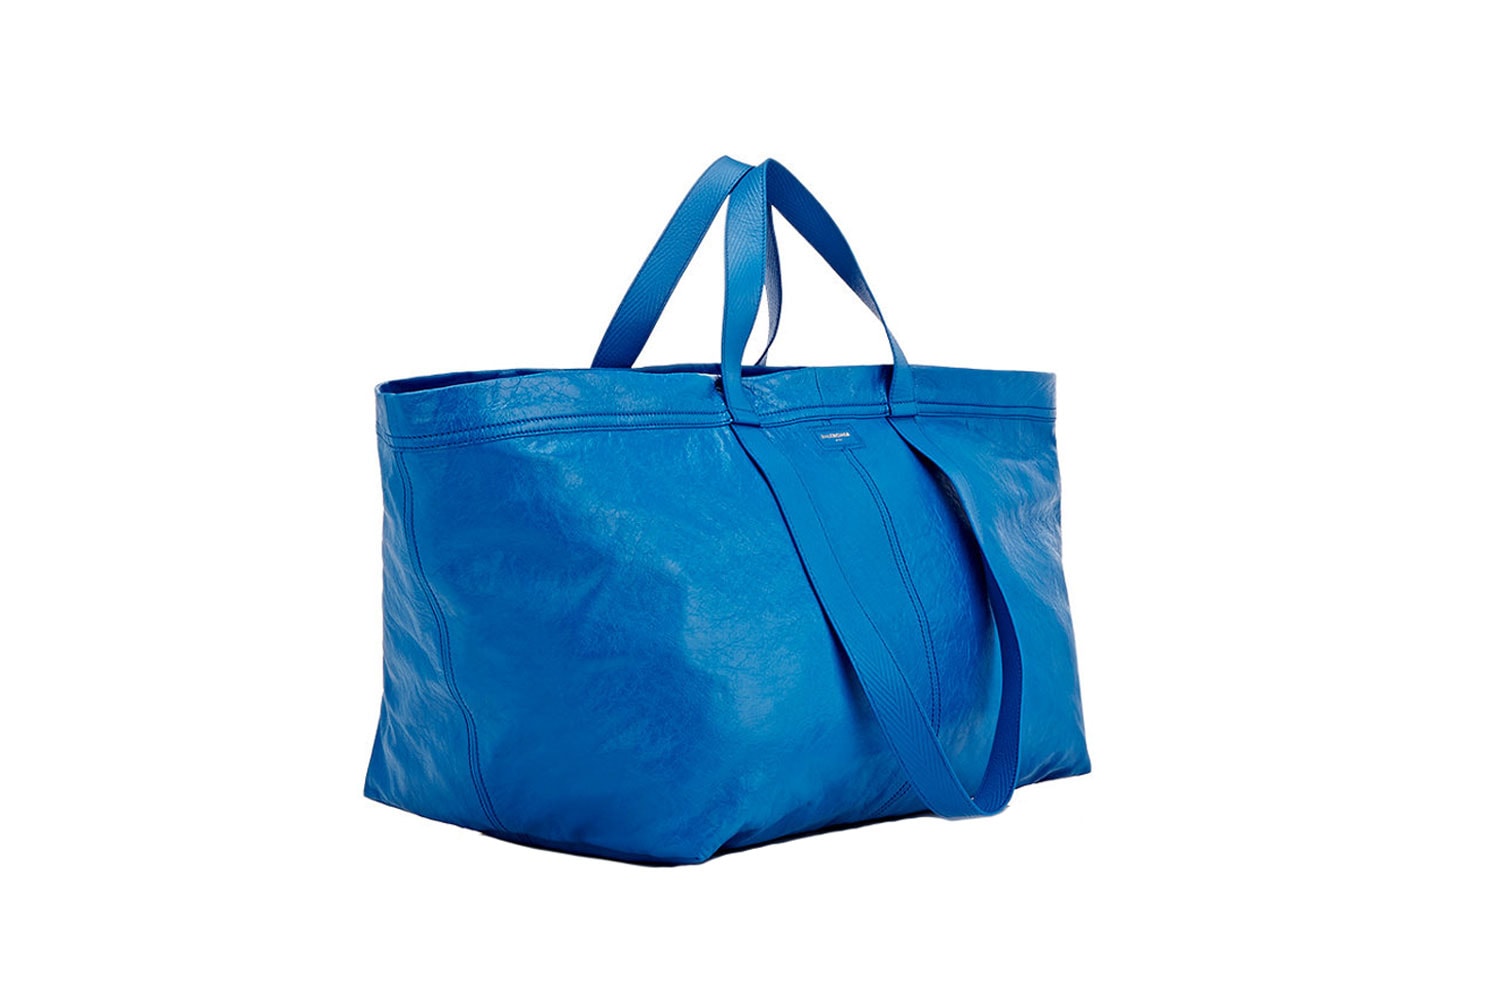 발렌시아가 아레나 엑스트라 라지 쇼퍼백 출시 2017 봄, 여름  balenciaga-ikea-frakta-shopping-bag